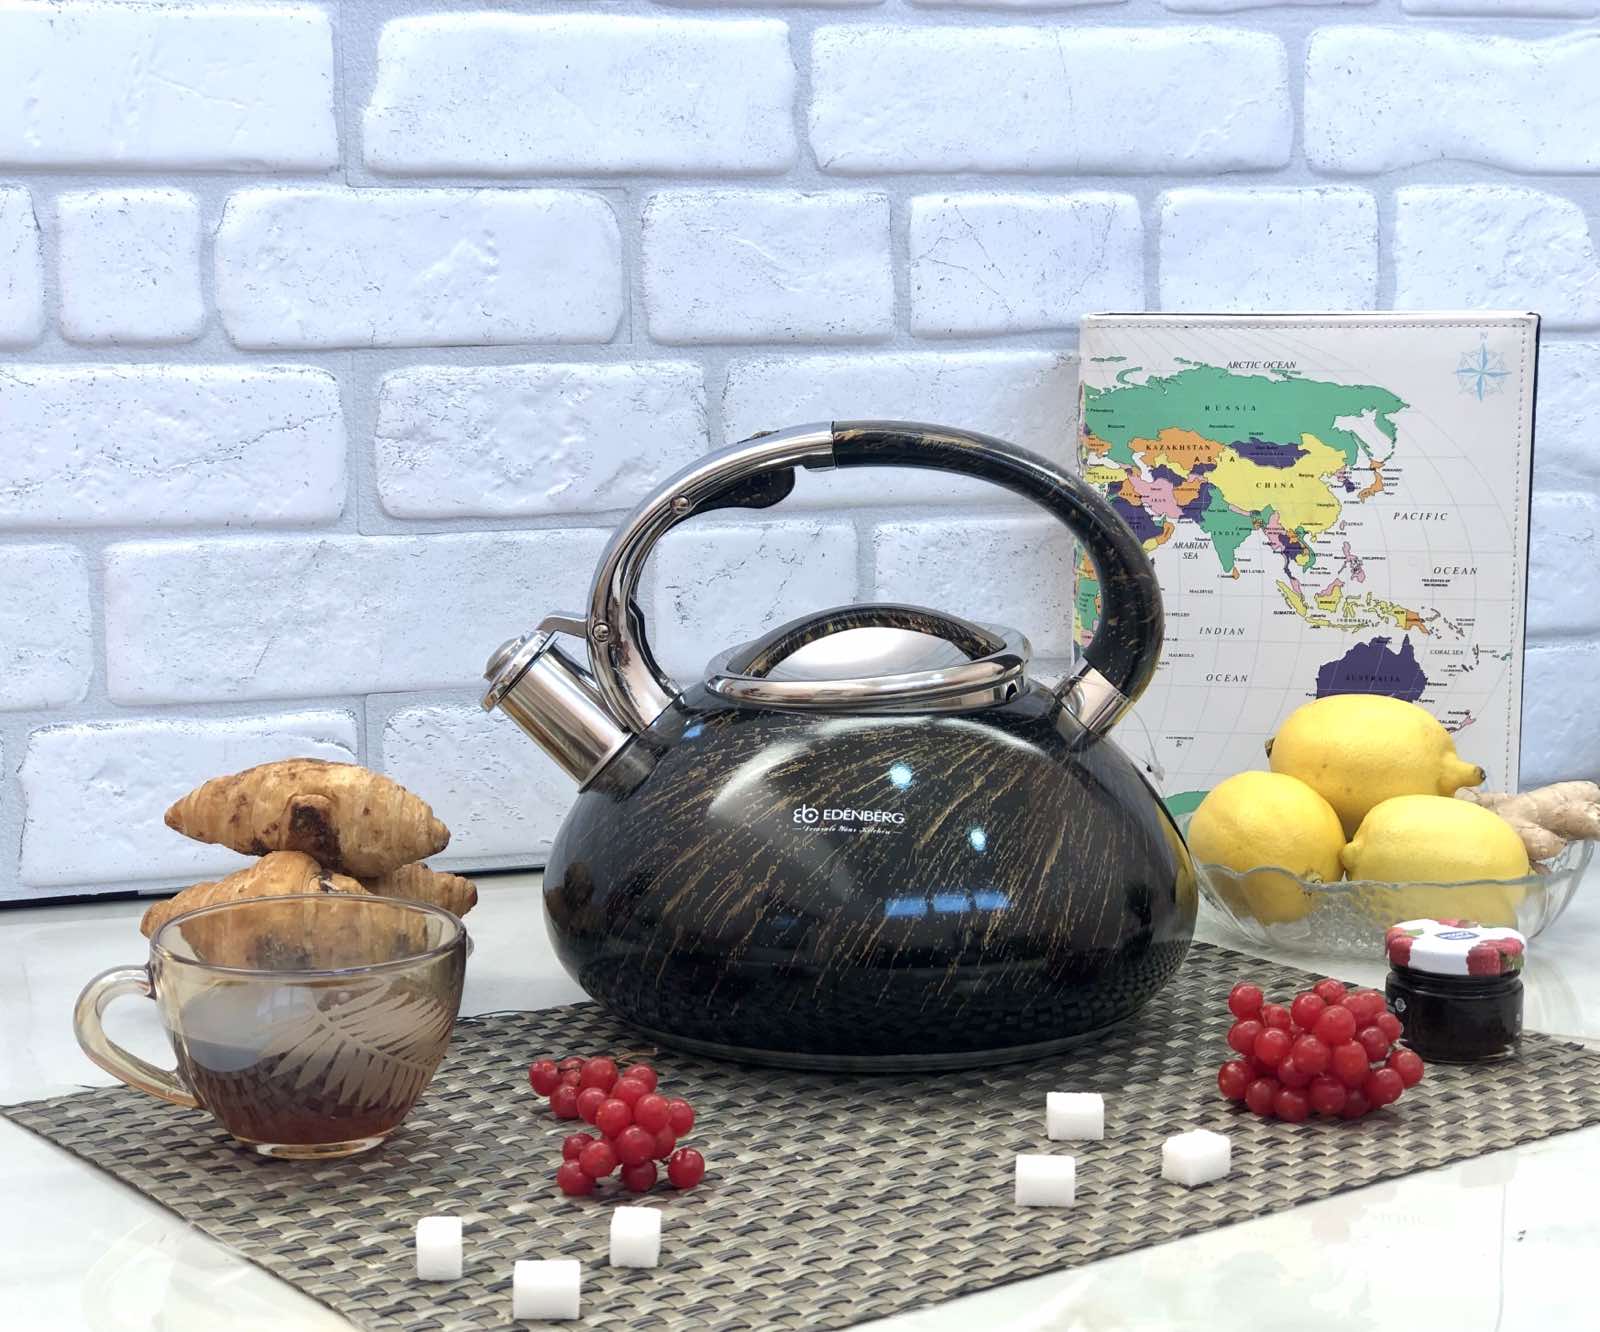 Чайник со свистком Edenberg EB - 1900 ✅ базовая цена $21.10 ✔ Опт ✔ Скидки ✔ Заходите! - Интернет-магазин ✅ Фортуна-опт ✅